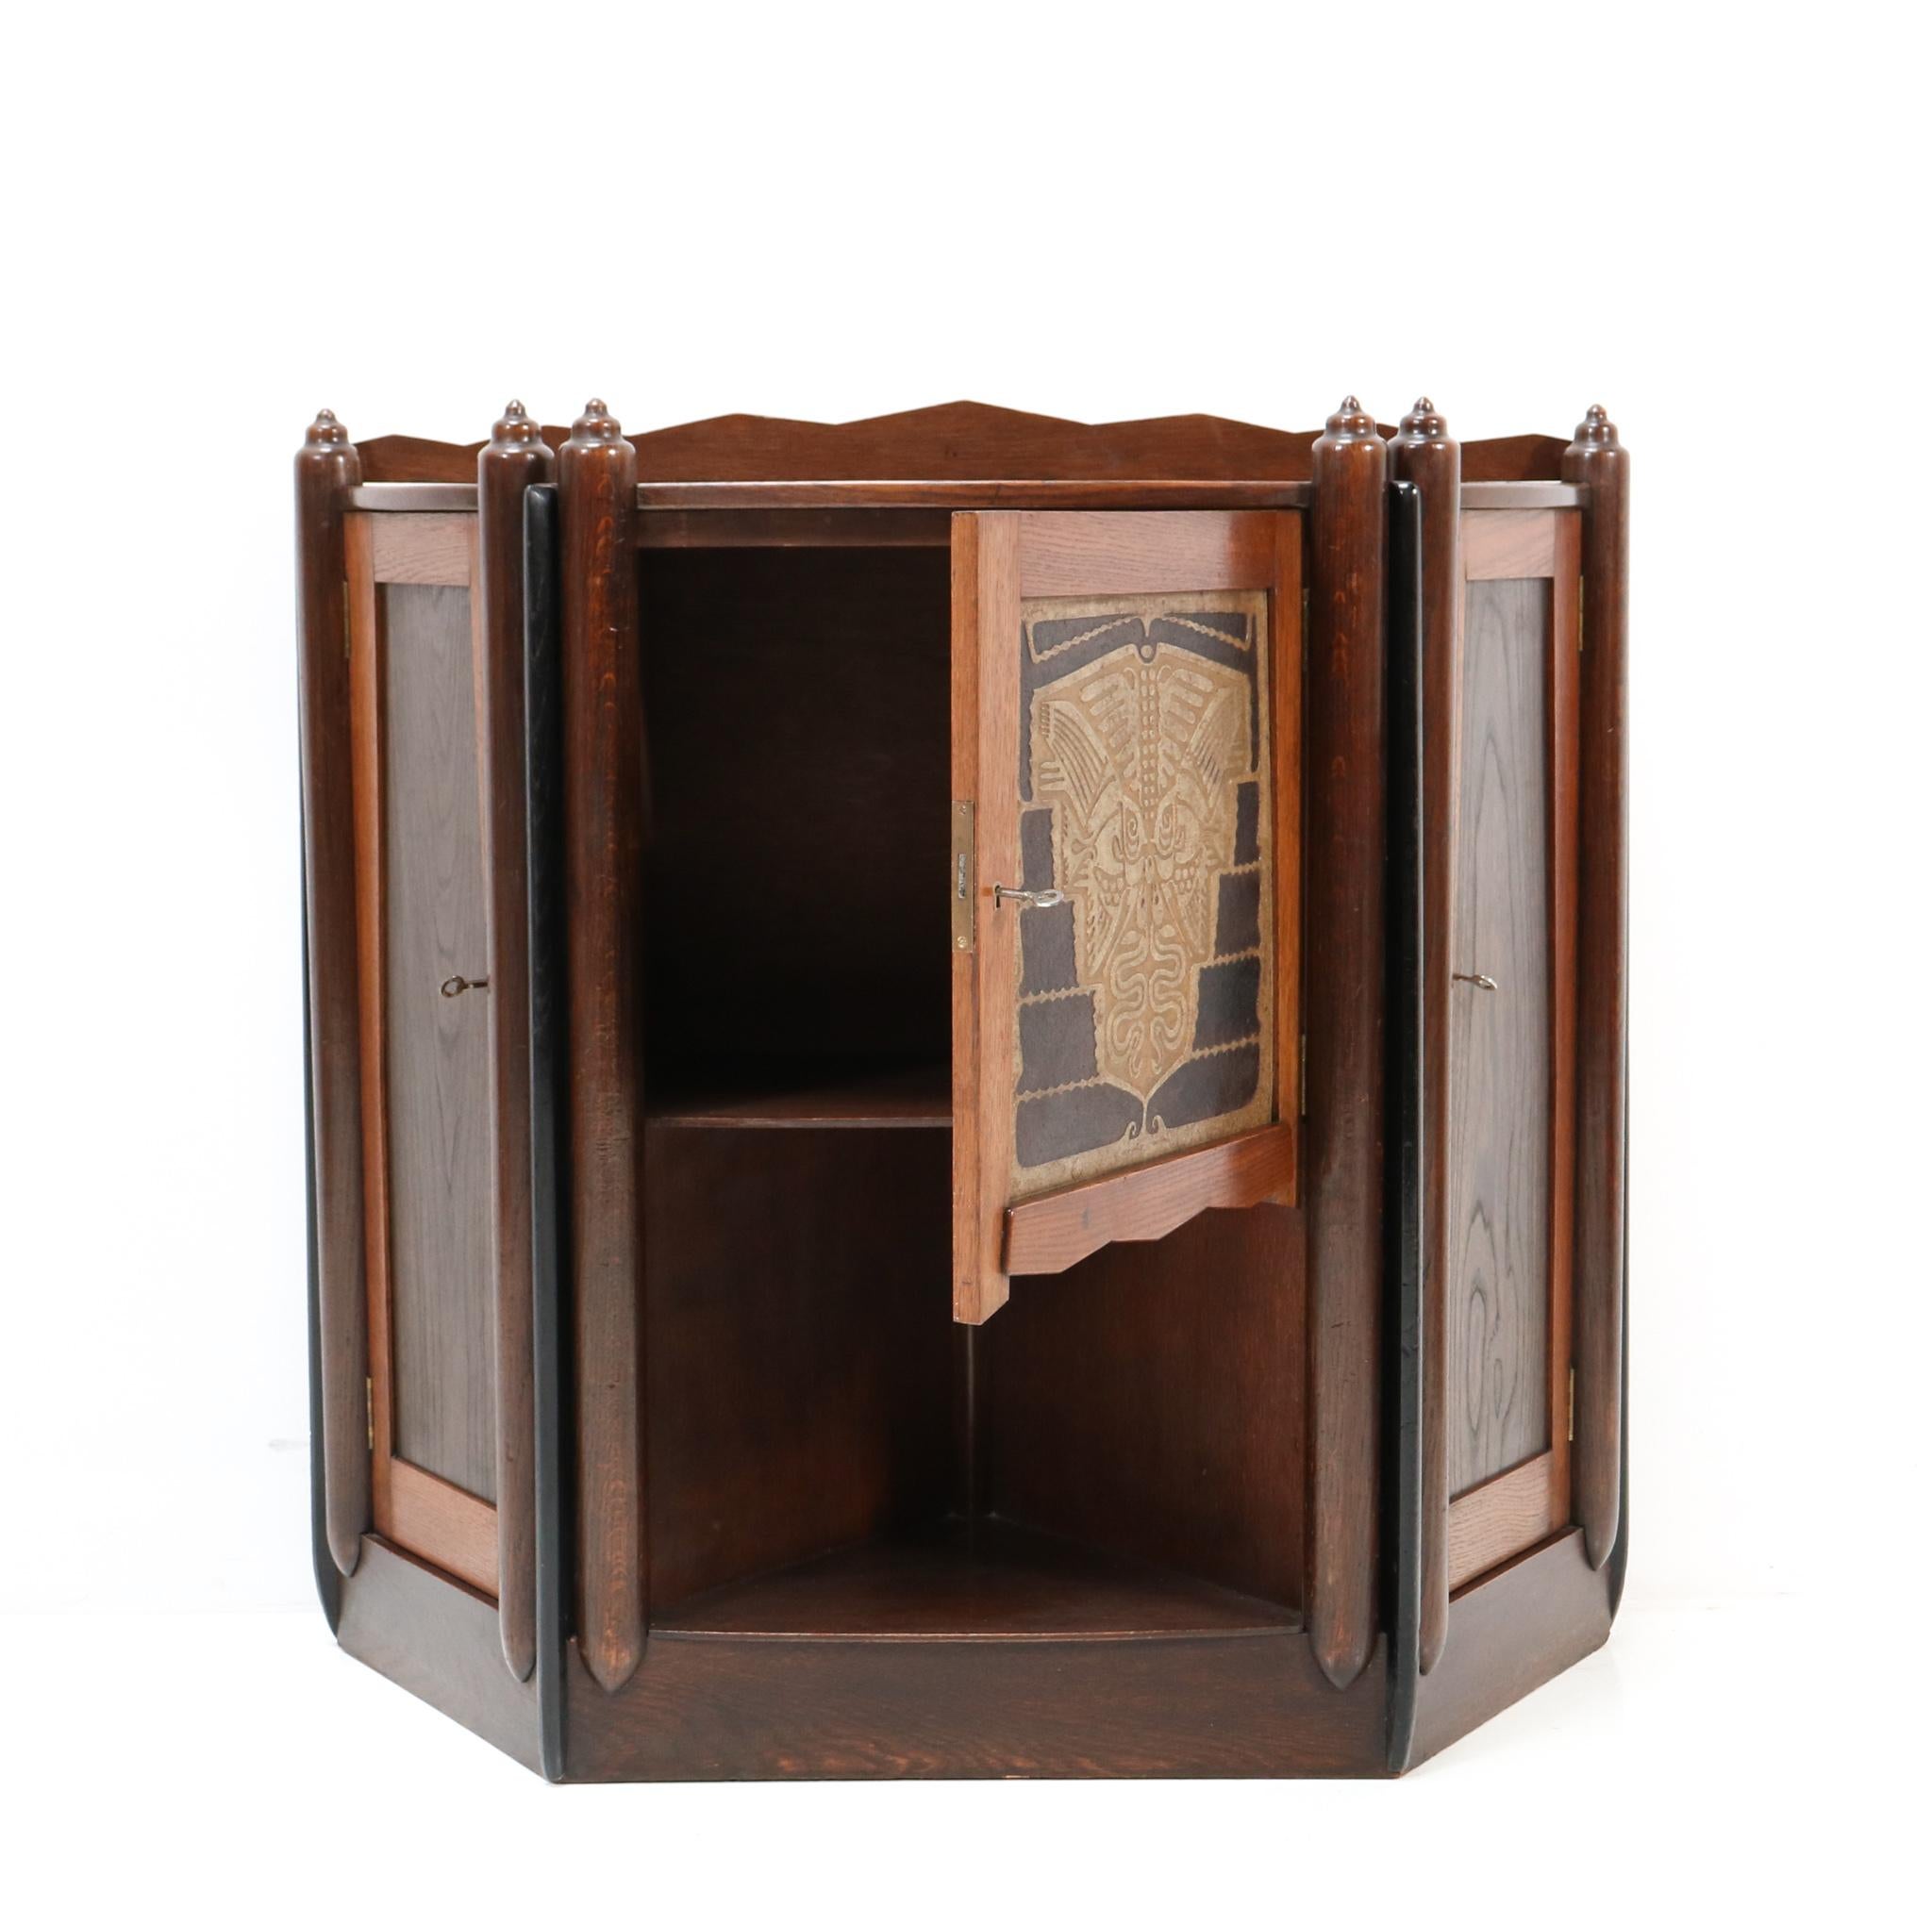  Oak Art Deco Amsterdamse School   Cabinet  by Chris Bartels, 1920s For Sale 1